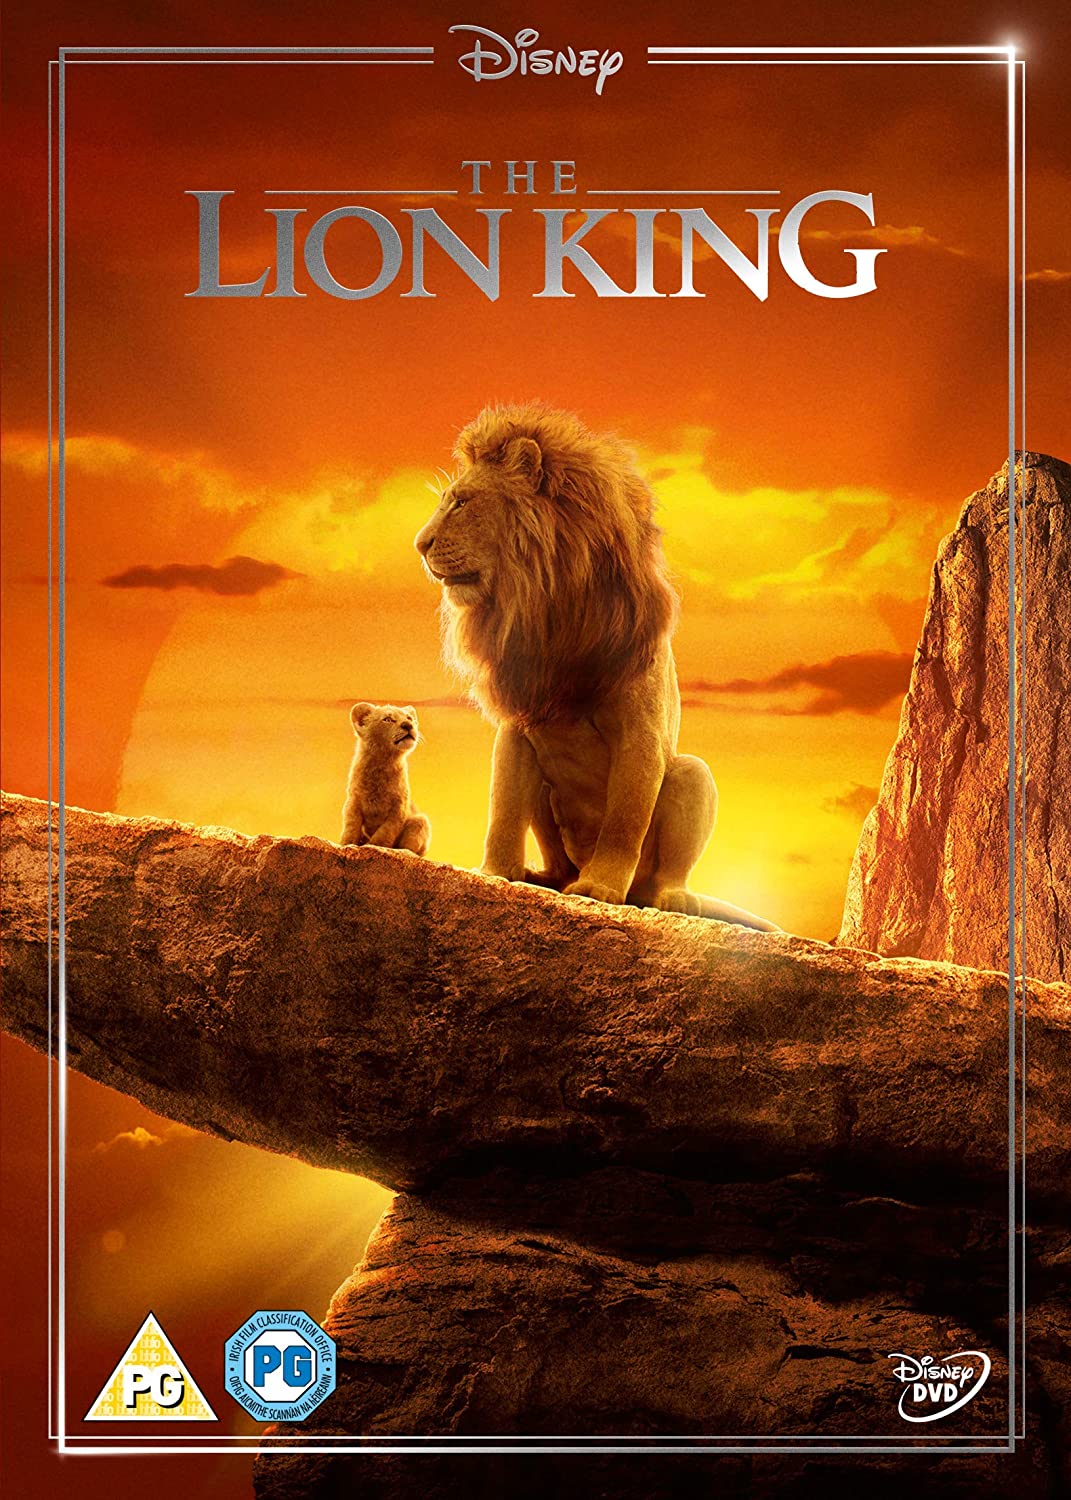 14-لایو اکشن شیر شاه 2019 The Lion King: بازگشت انیمیشن محبوب در قالب لایو اکشن از پرهزینه ترین فیلم های سینما!